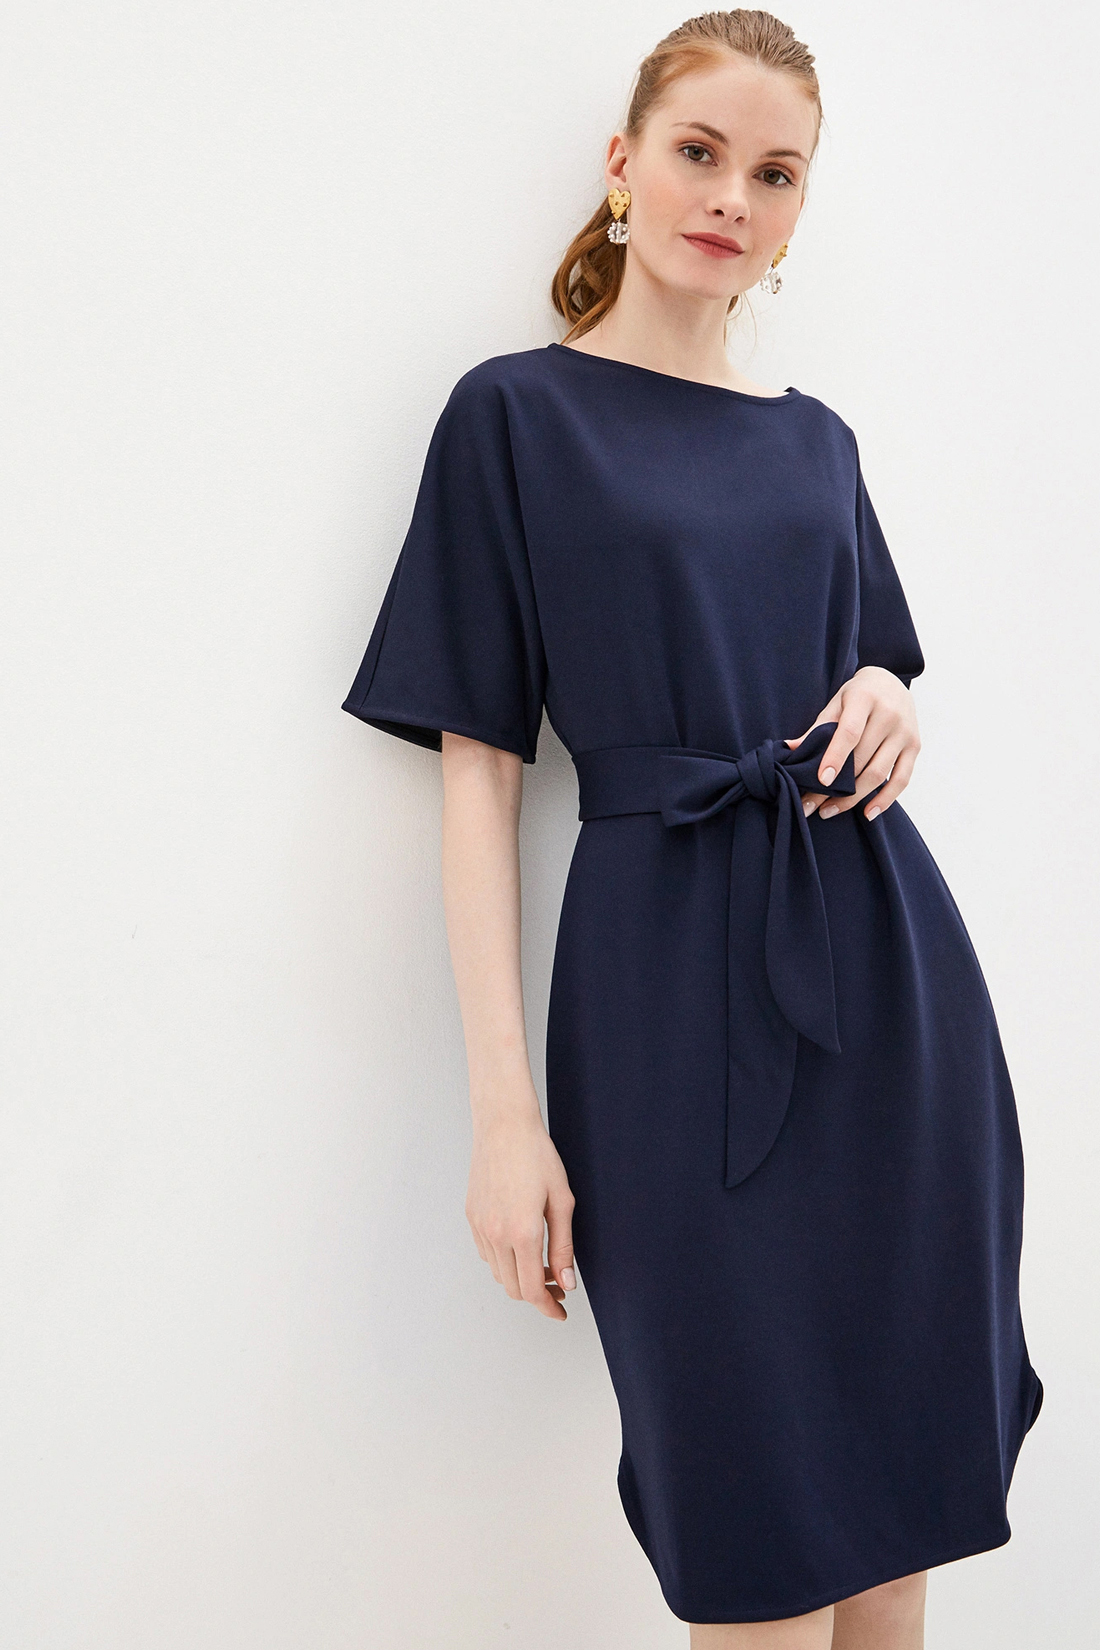 Платье с поясом (арт. baon B450021), размер XL, цвет синий Платье с поясом (арт. baon B450021) - фото 4